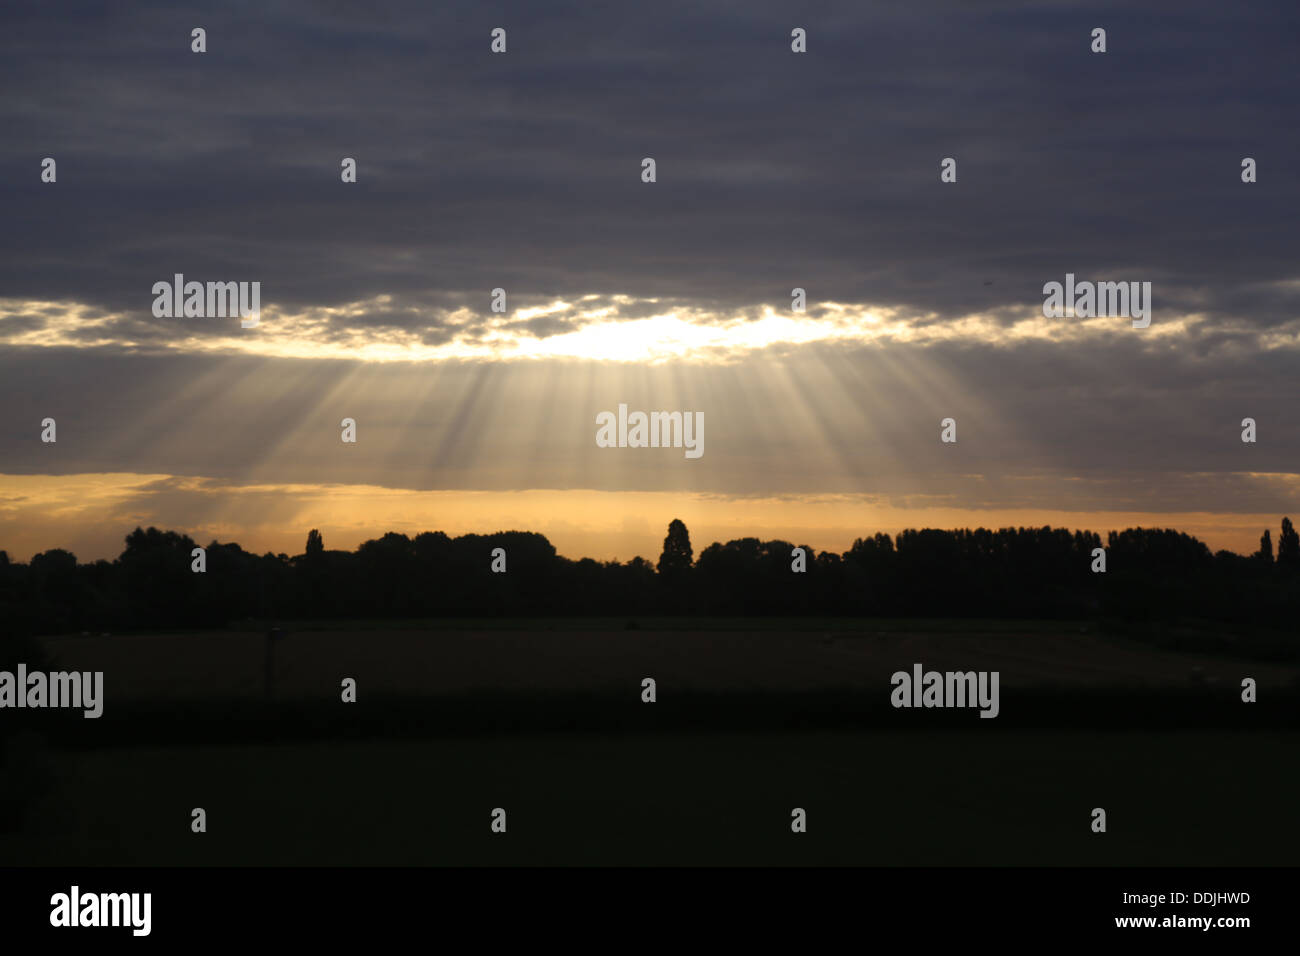 Los rayos de luz a través de una lenta pesada capa de nubes para iluminar una zona desconocida de la campiña inglesa de una mañana temprana Foto de stock